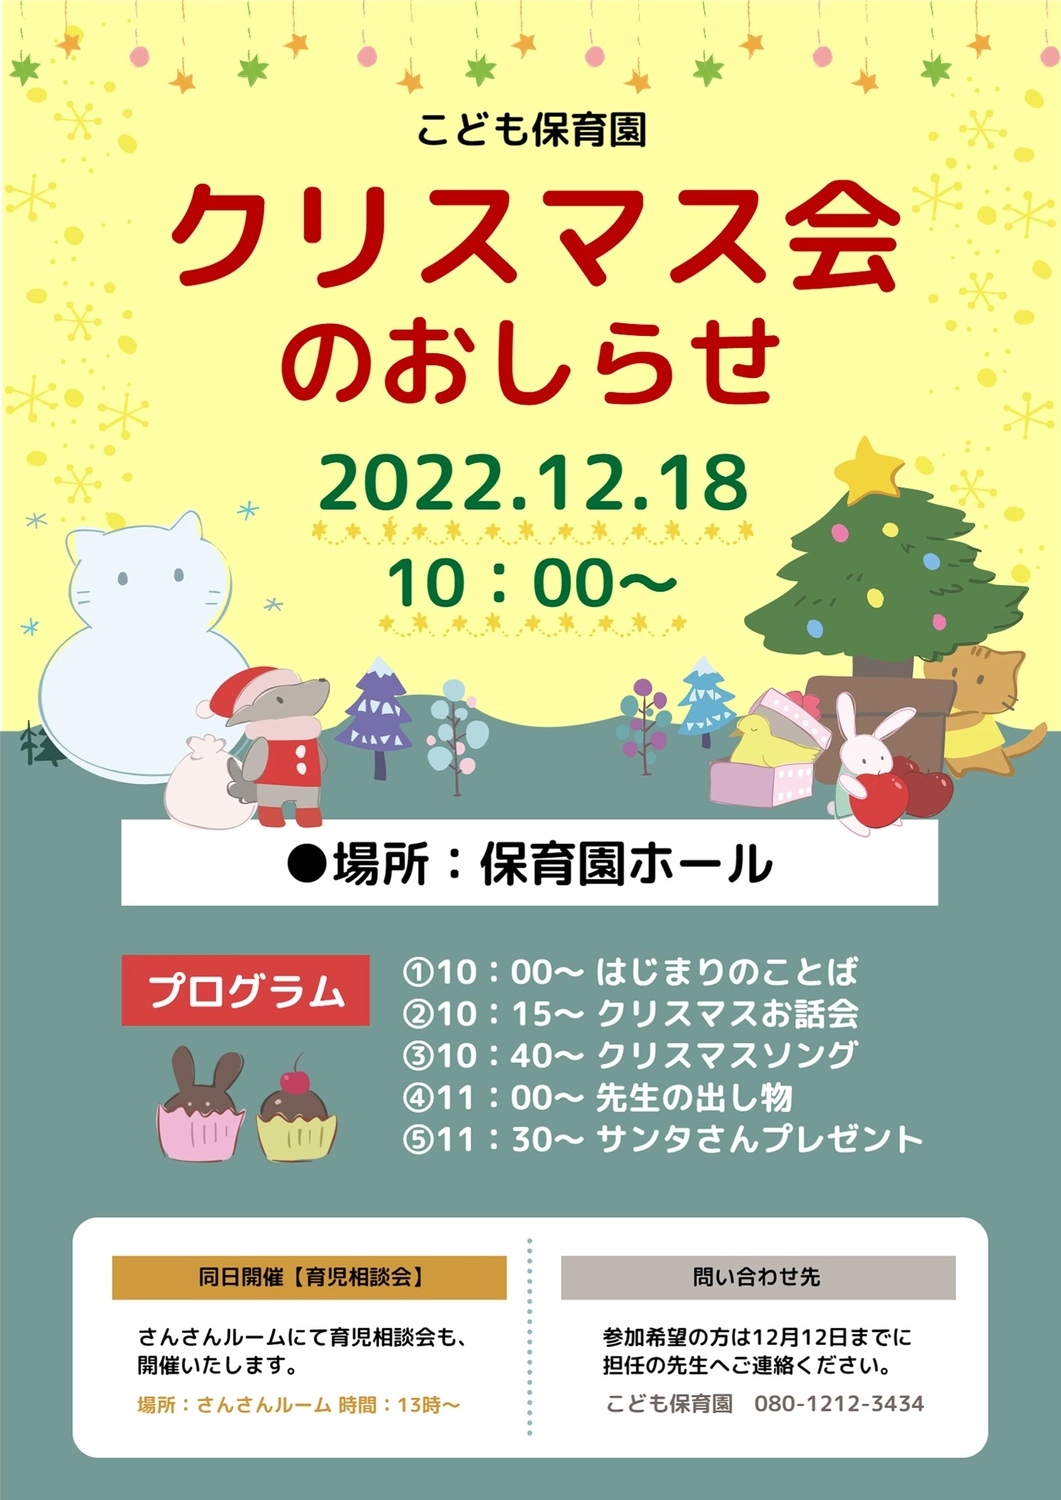 保育園のクリスマス会のお知らせ, nursery school, pretty, December, Flyer template